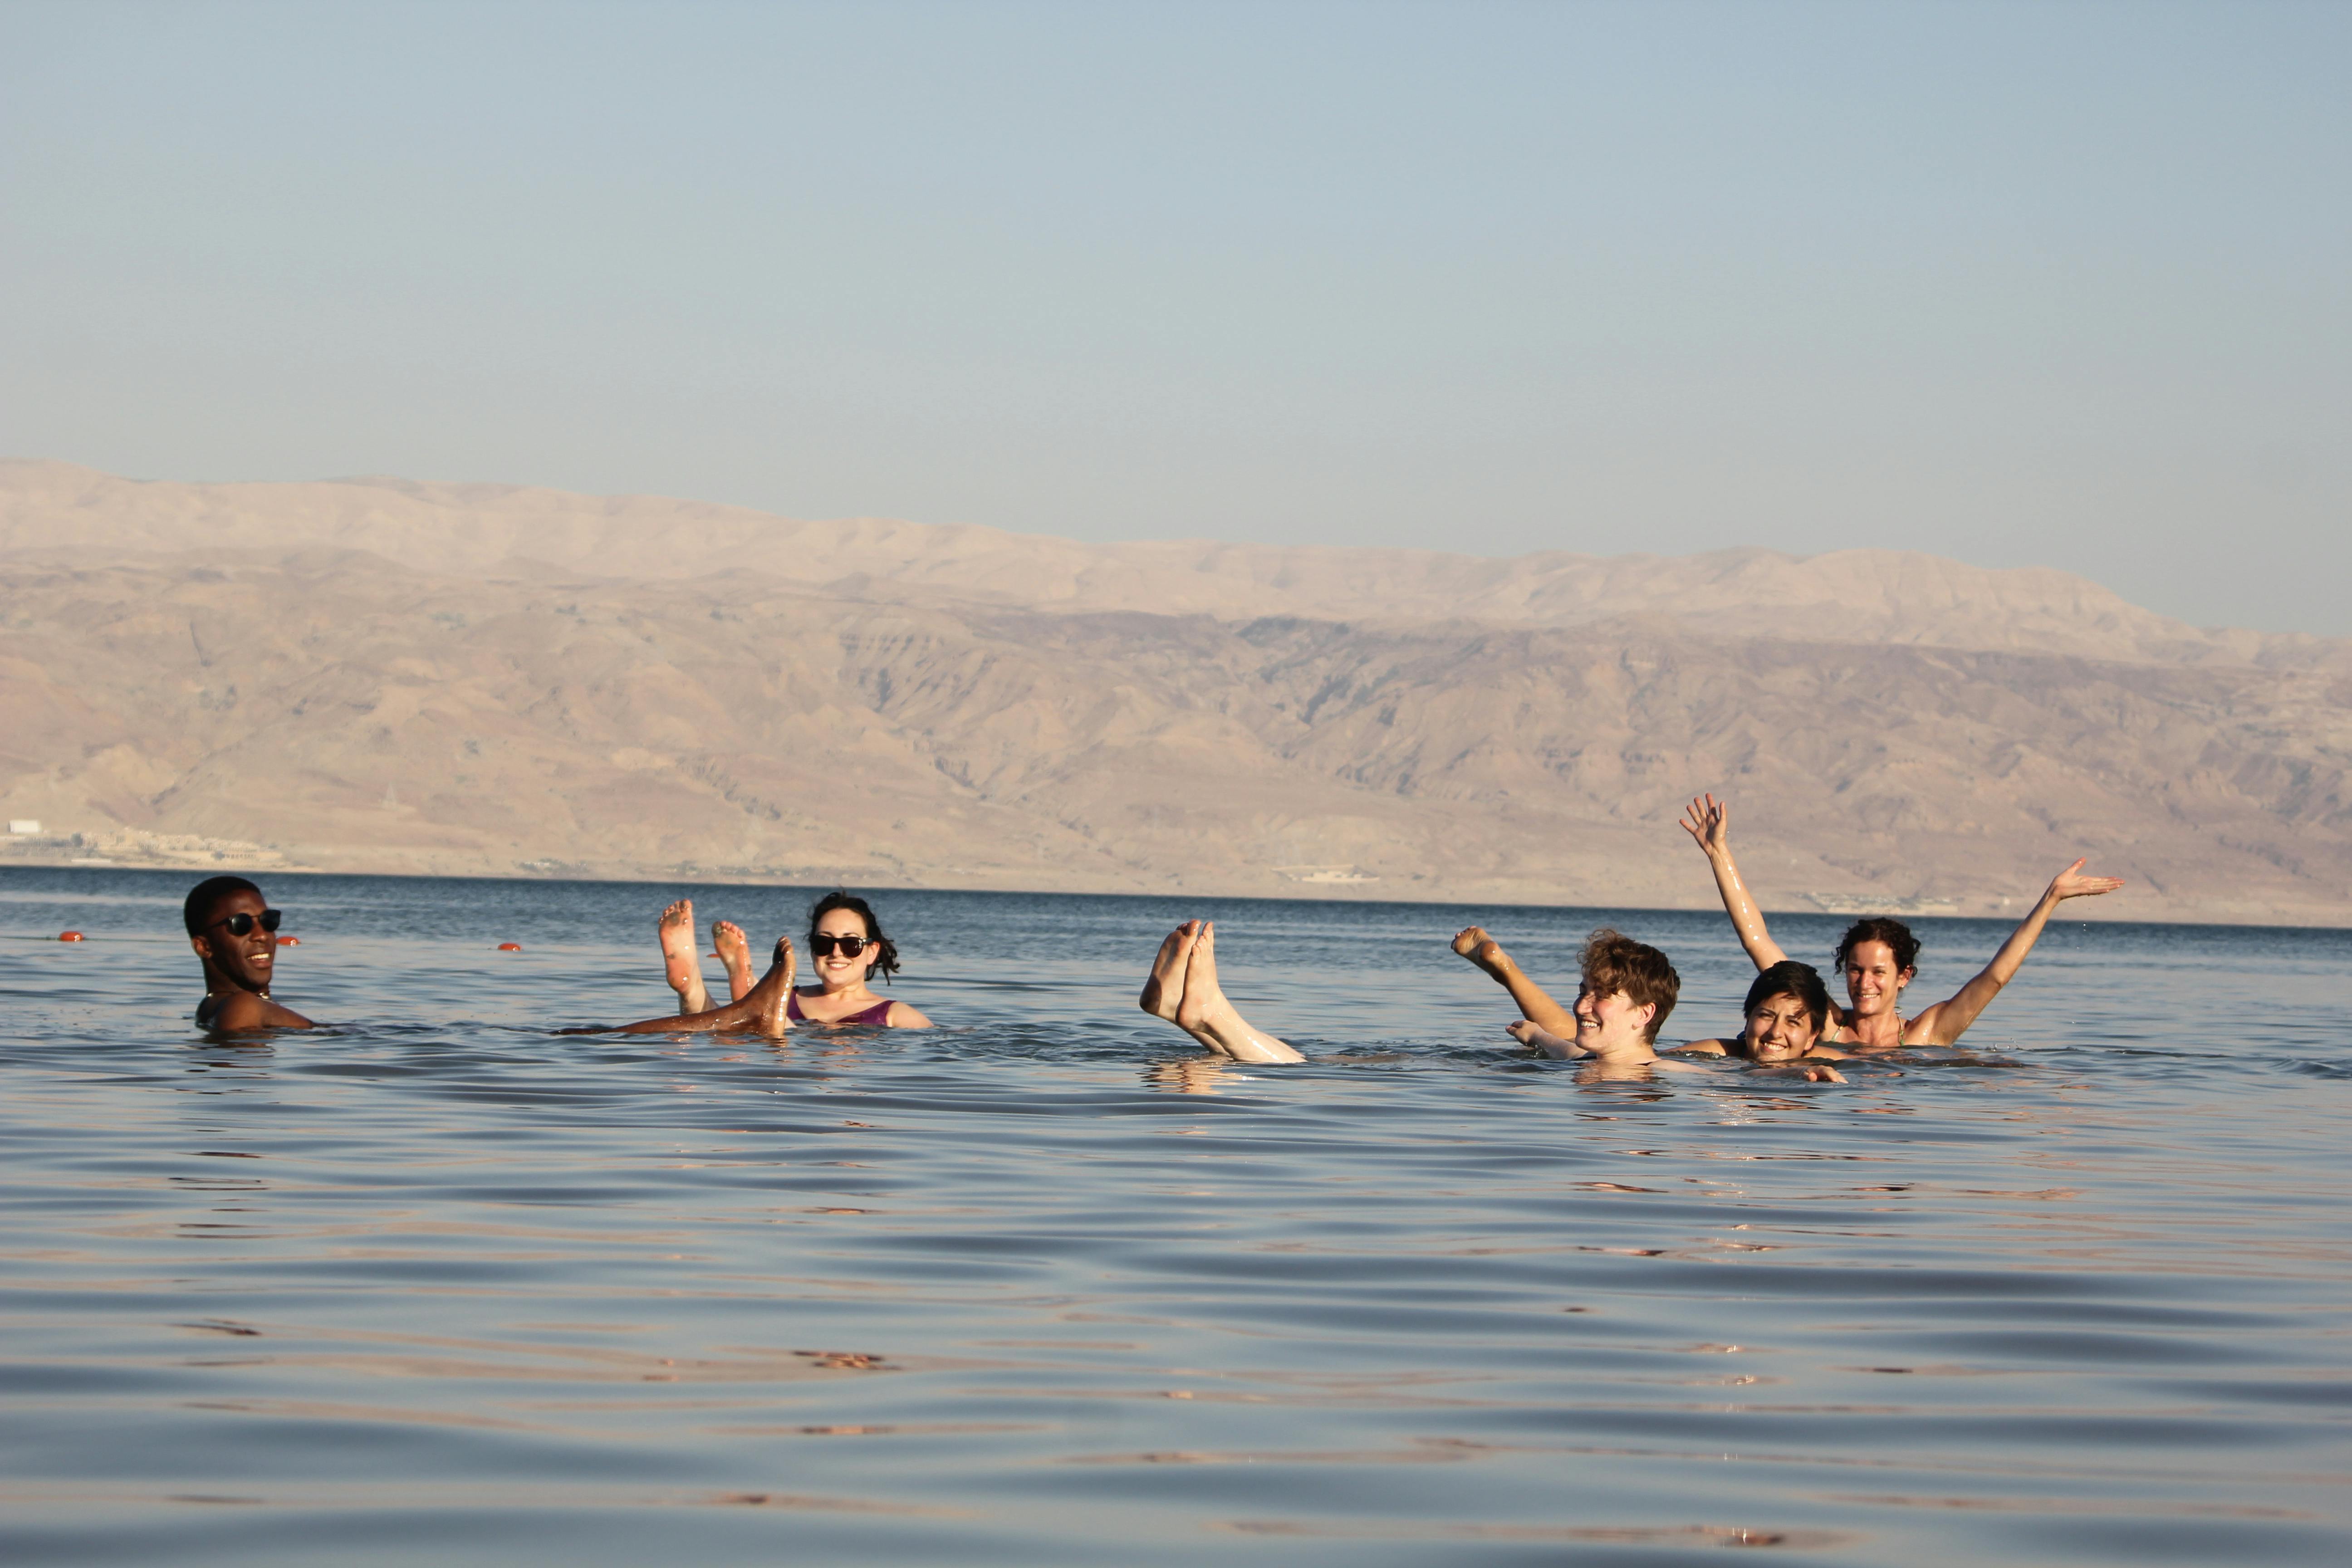 Masada Ein Gedi and Dead Sea tour from Tel Aviv Musement